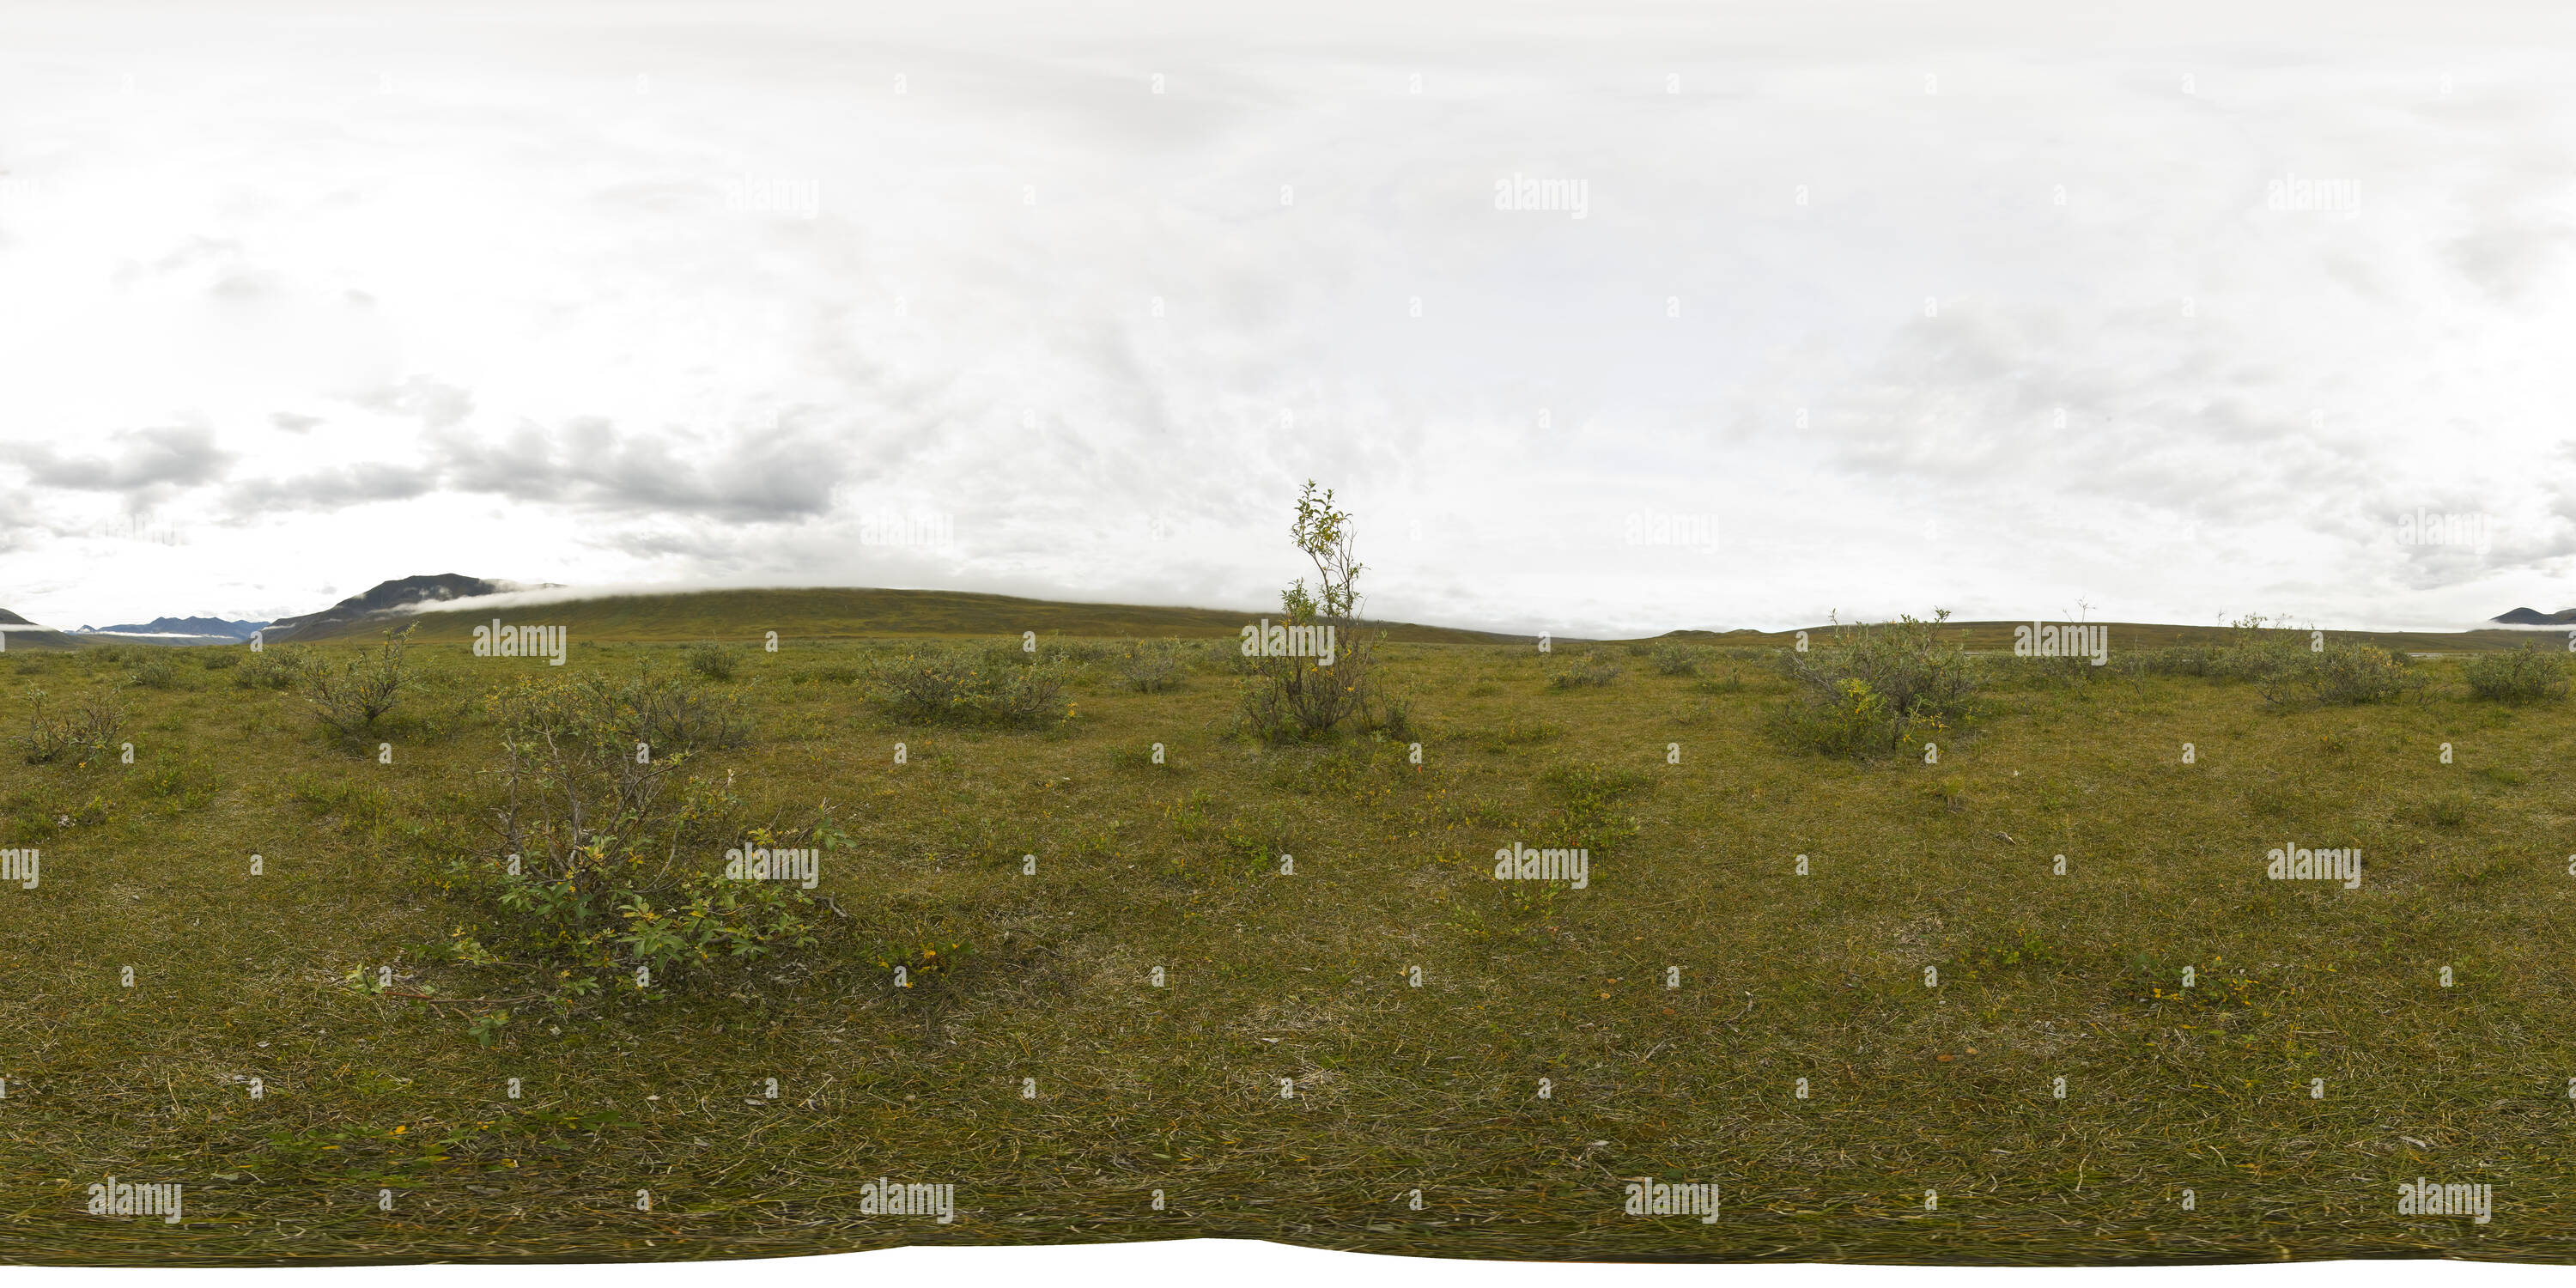 Visualizzazione panoramica a 360 gradi di Jago Fiume (17 Aug 07 12:23)